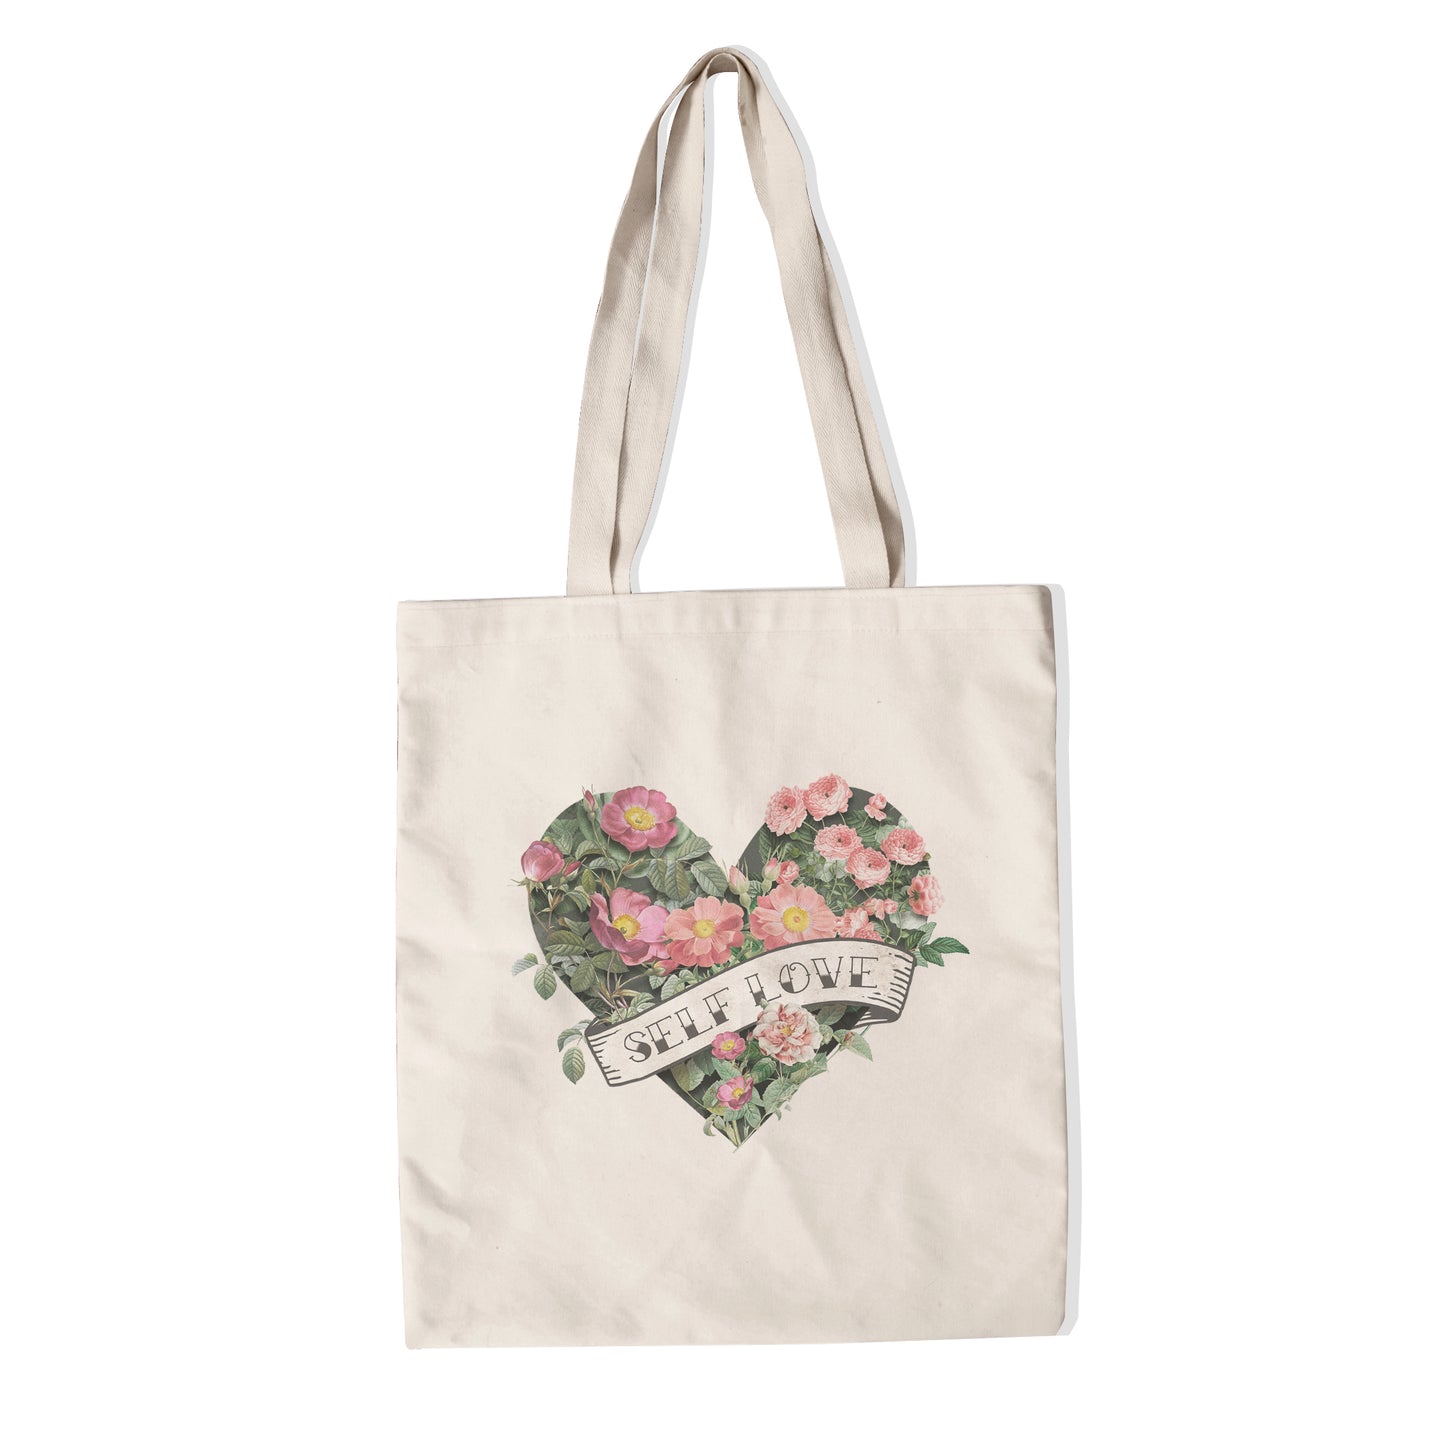 Self Love tote bag